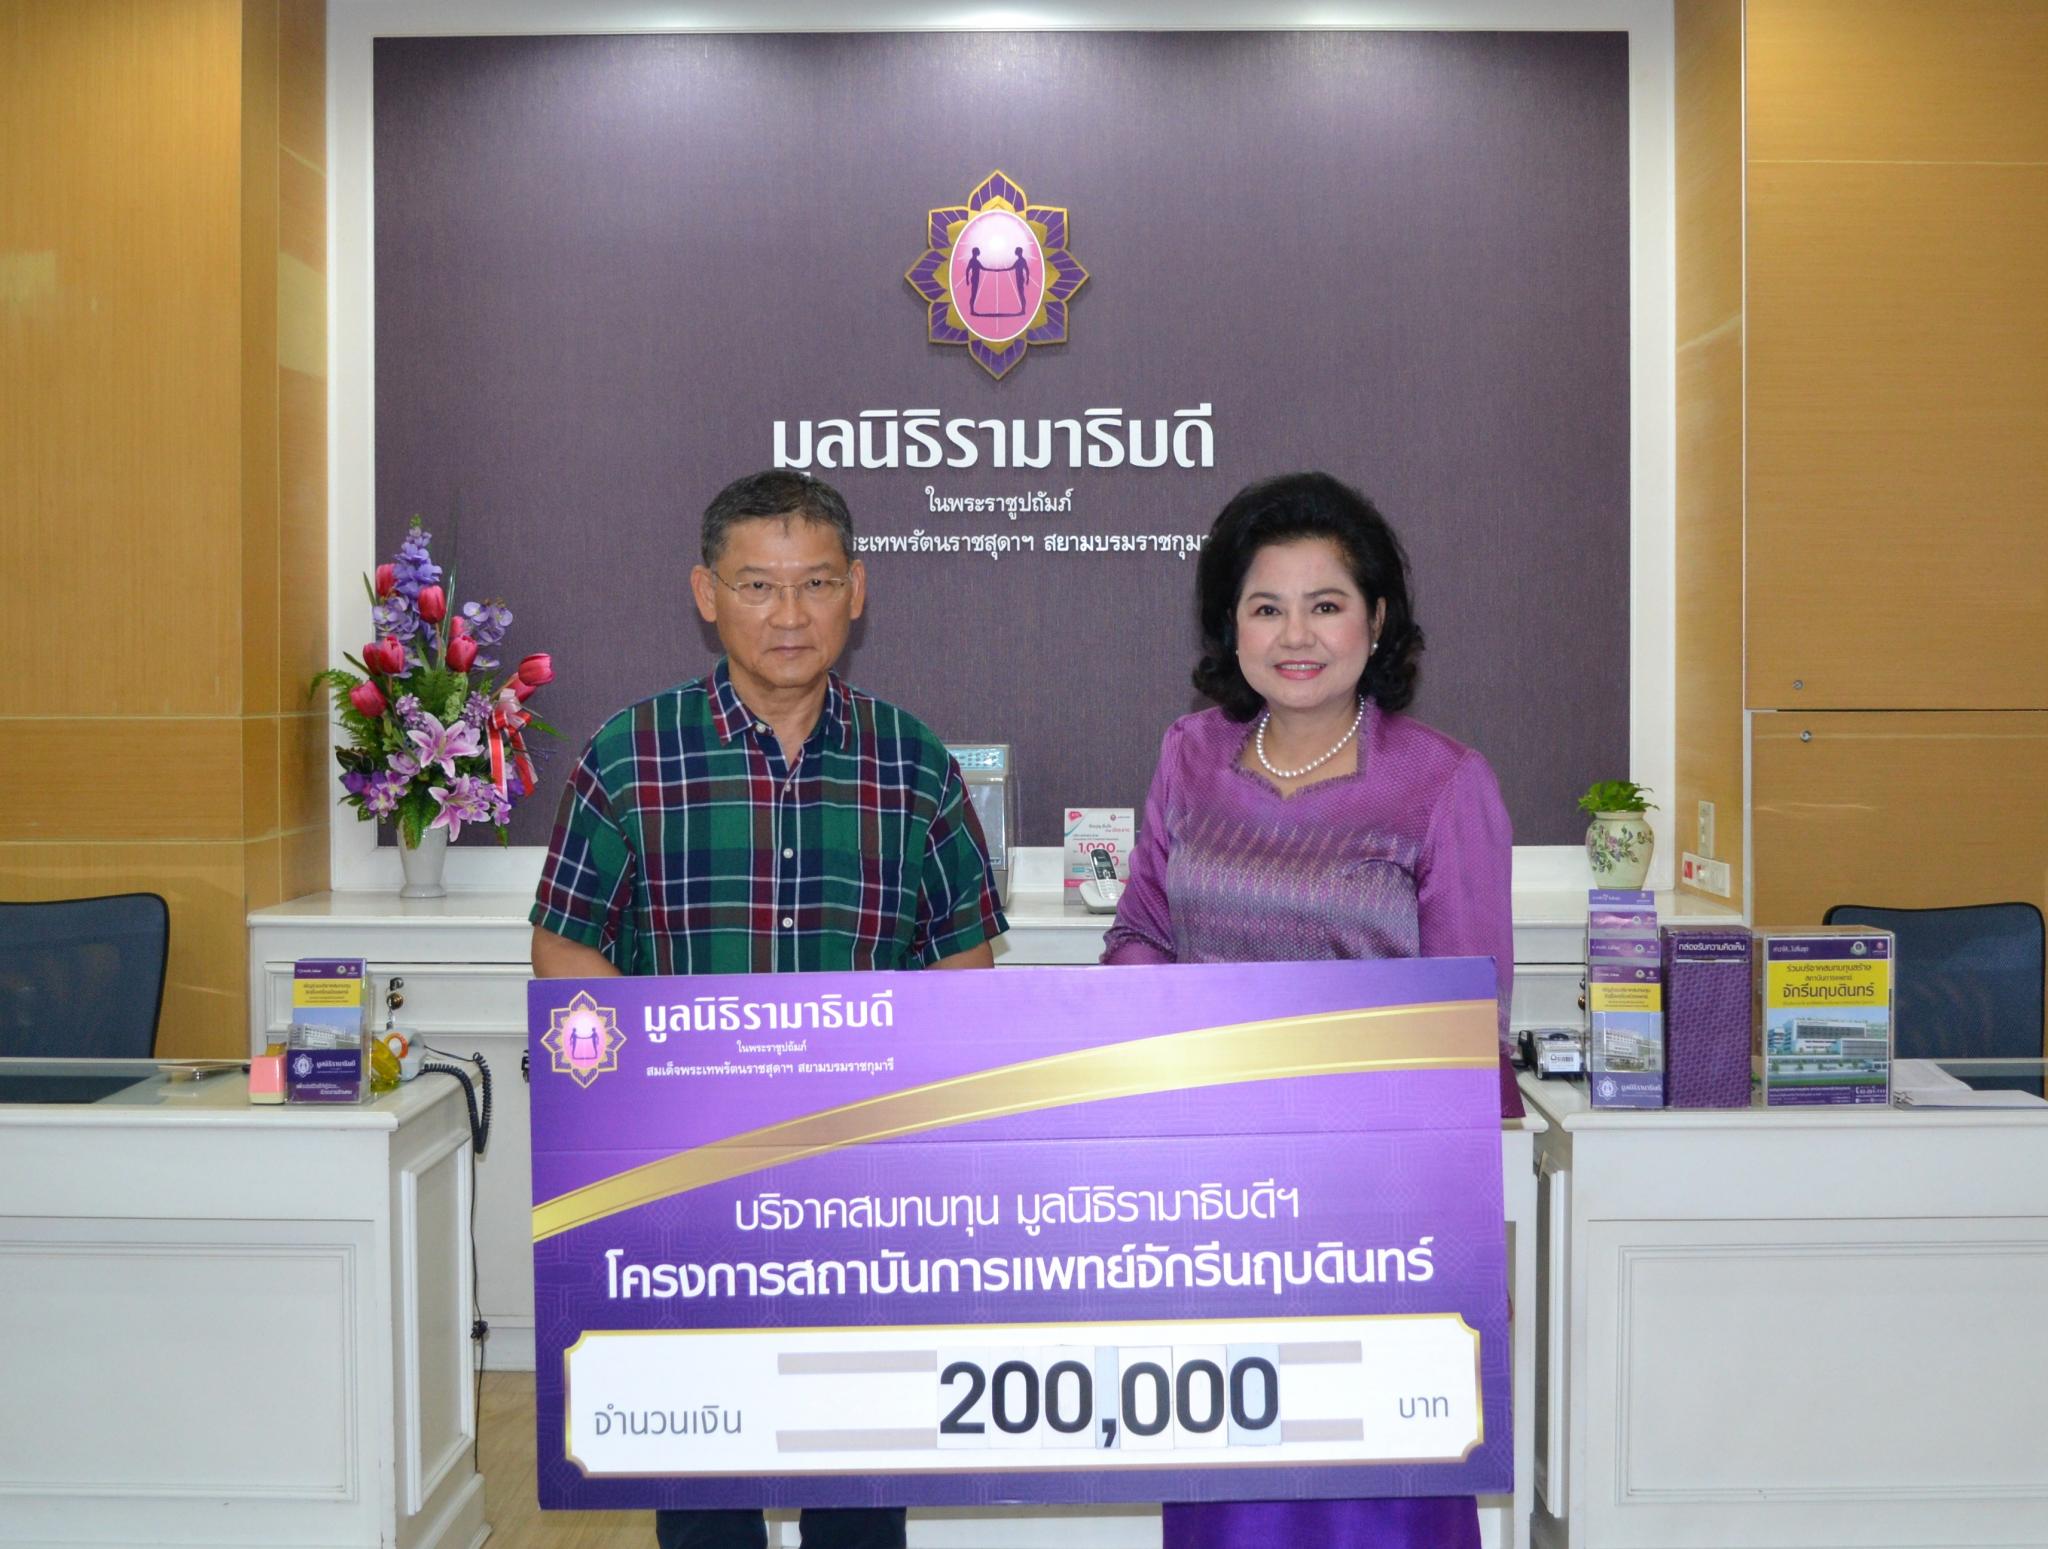 คุณสมชาย คุลีเมฆิน และครอบครัว มอบเงินบริจาคสมทบทุนโครงการสถาบันการแพทย์จักรีนฤบดินทร์